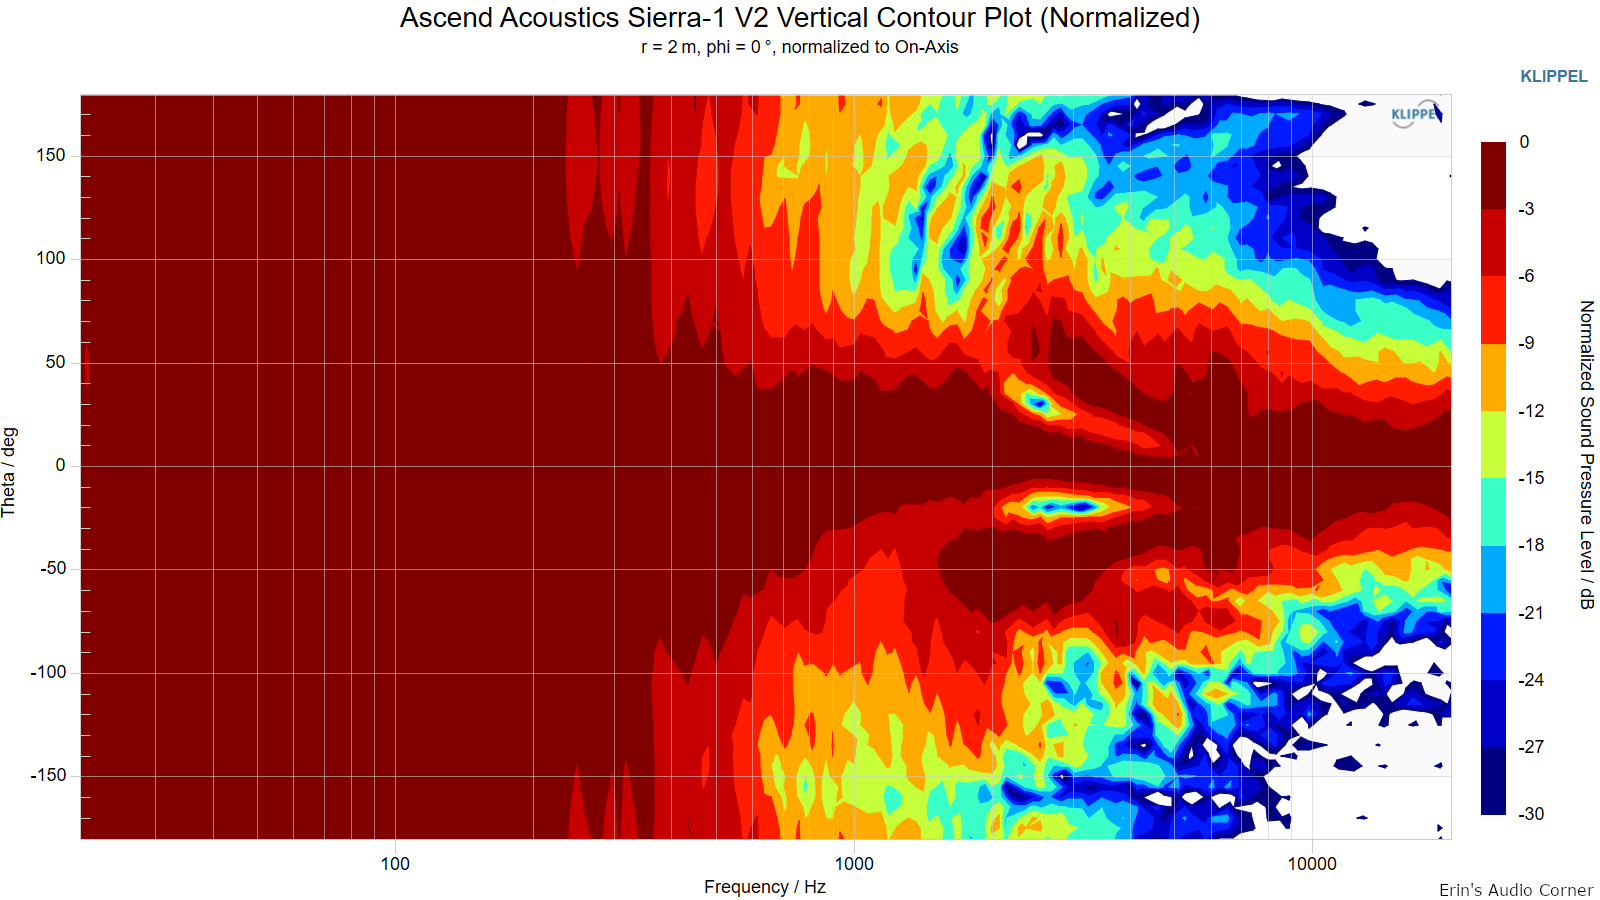 Ascend-Acoustics-Sierra-1-V2-Vertical-Contour-Plot-Normalized.png